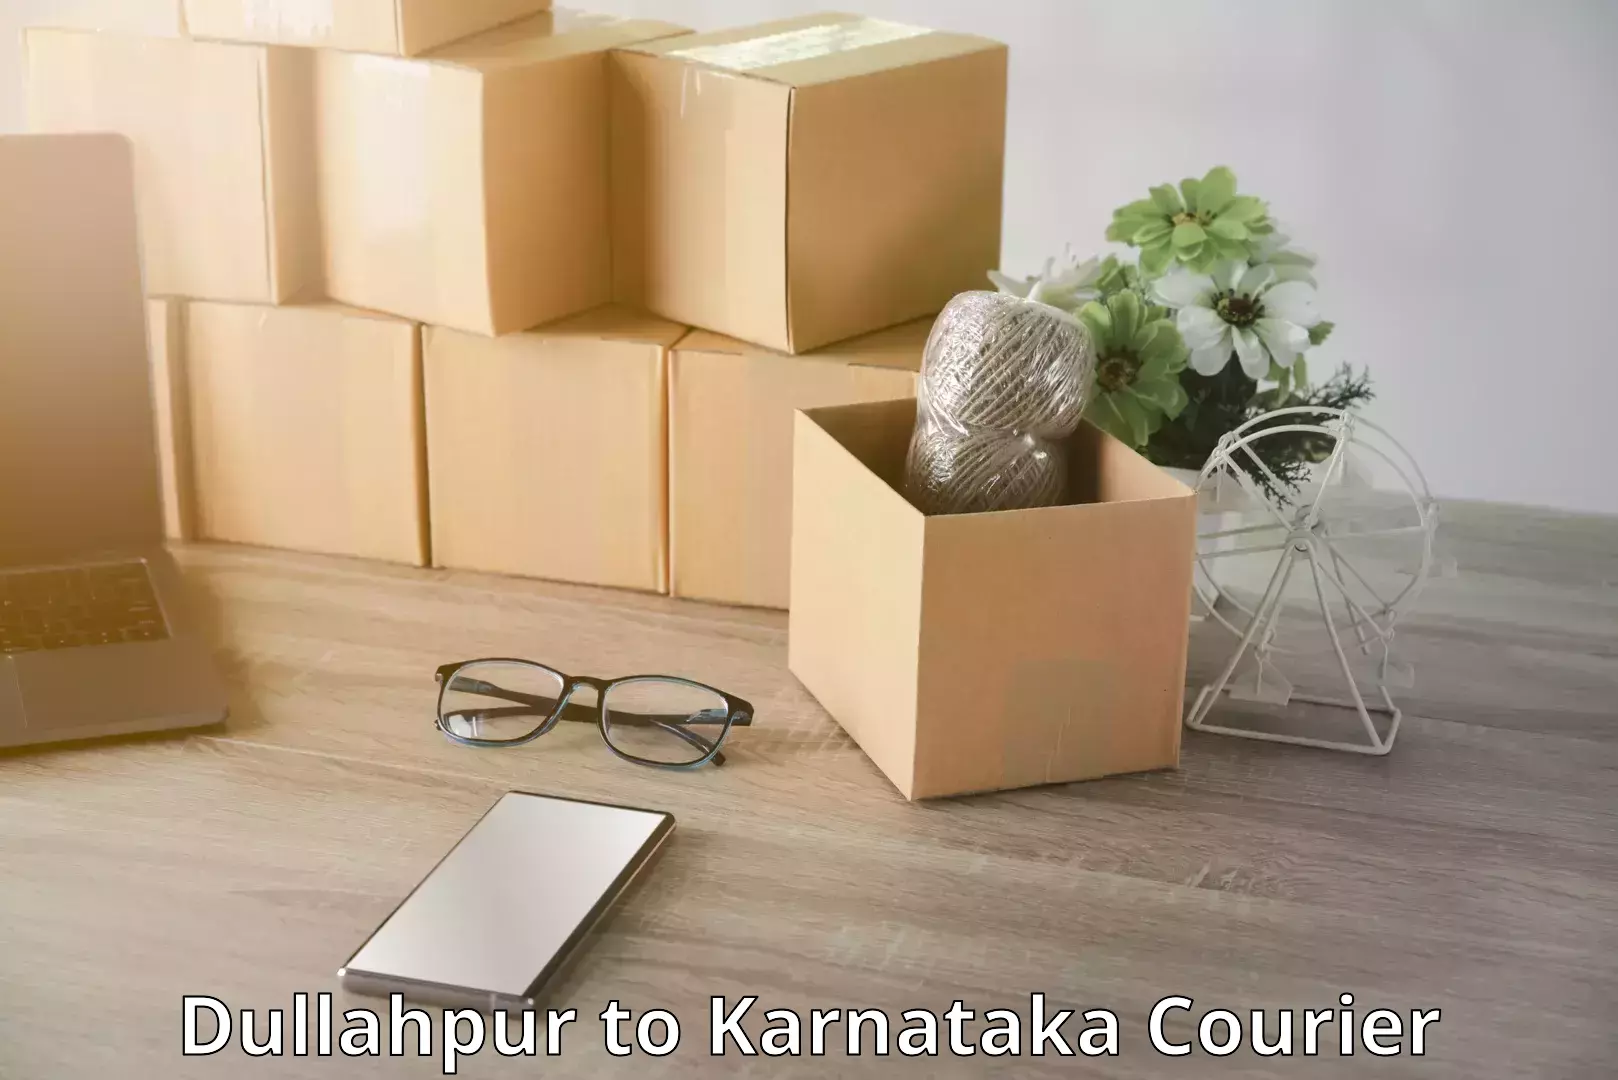 Luggage dispatch service Dullahpur to Karnataka